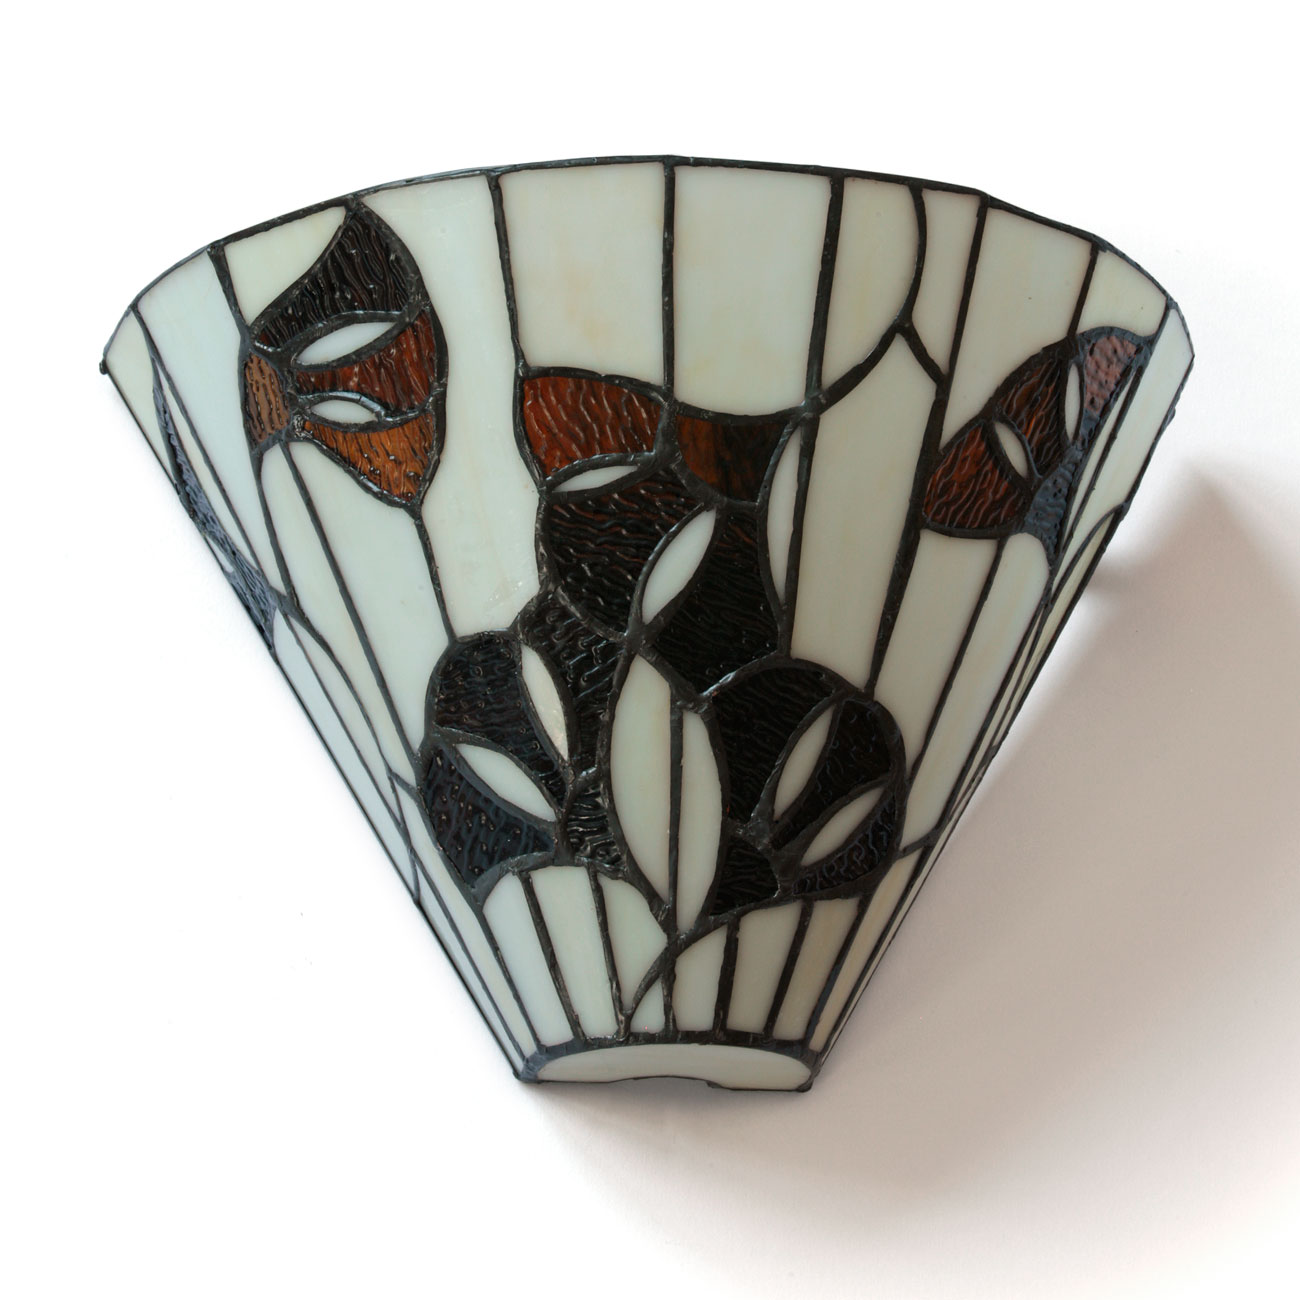 Halbrunde Wandleuchte mit Gingkoblättern aus Tiffany-Glas: Die Leuchte im ausgeschalteten Zustand